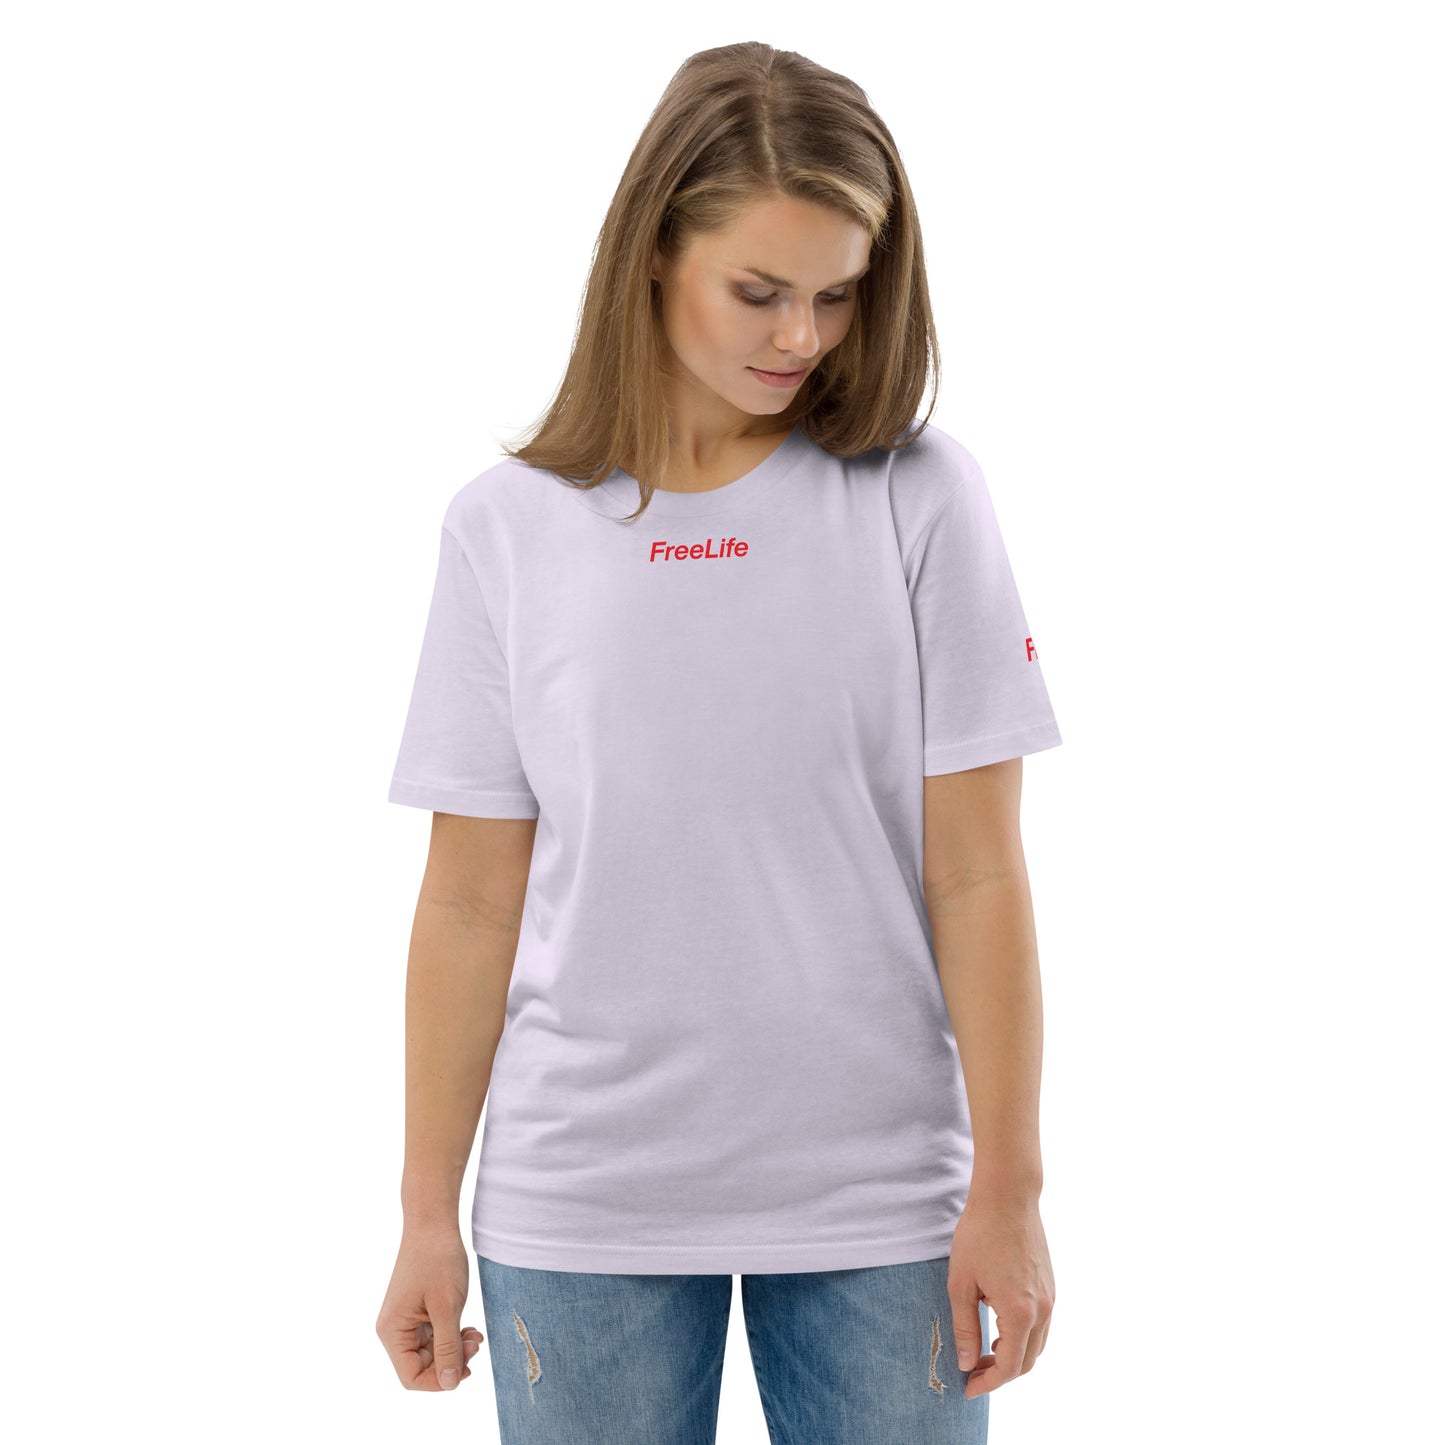 Baumwoll-T-Shirt